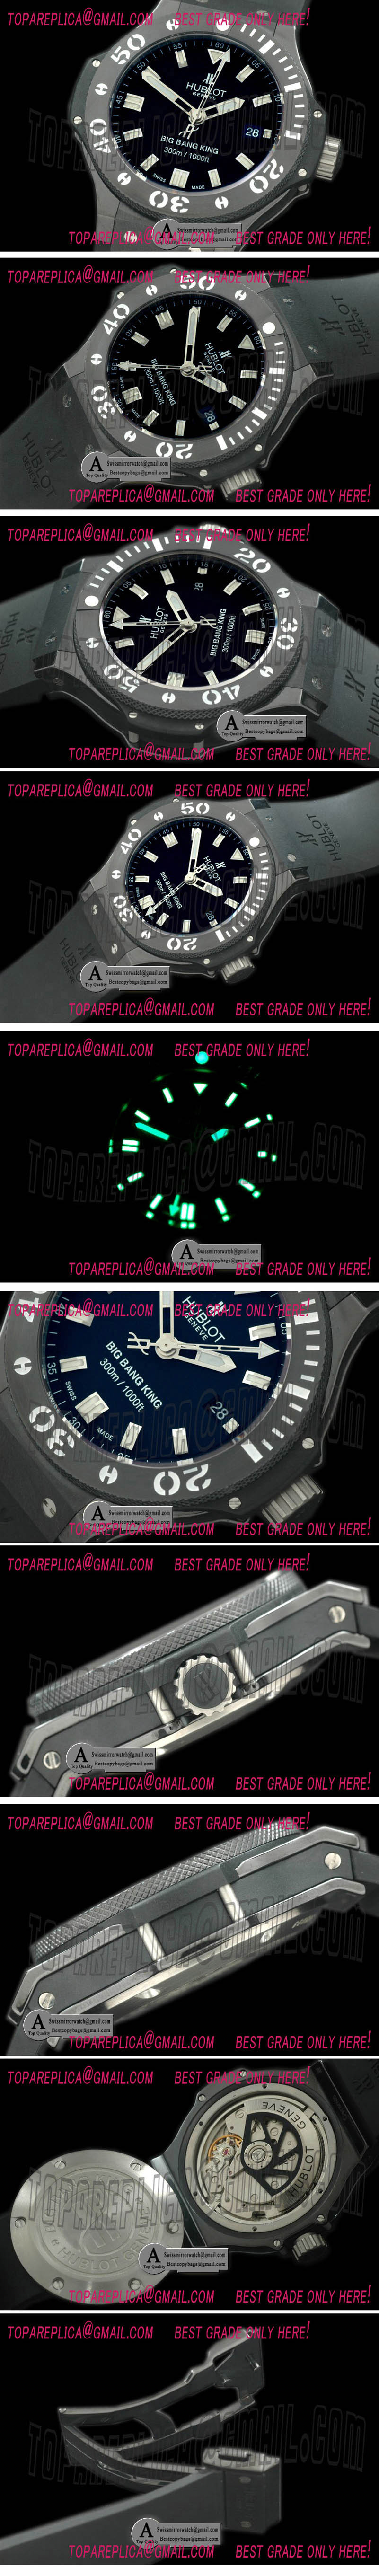 Hublot Big Bang King Black Magic Rubber Black A-7750 Replica Watches